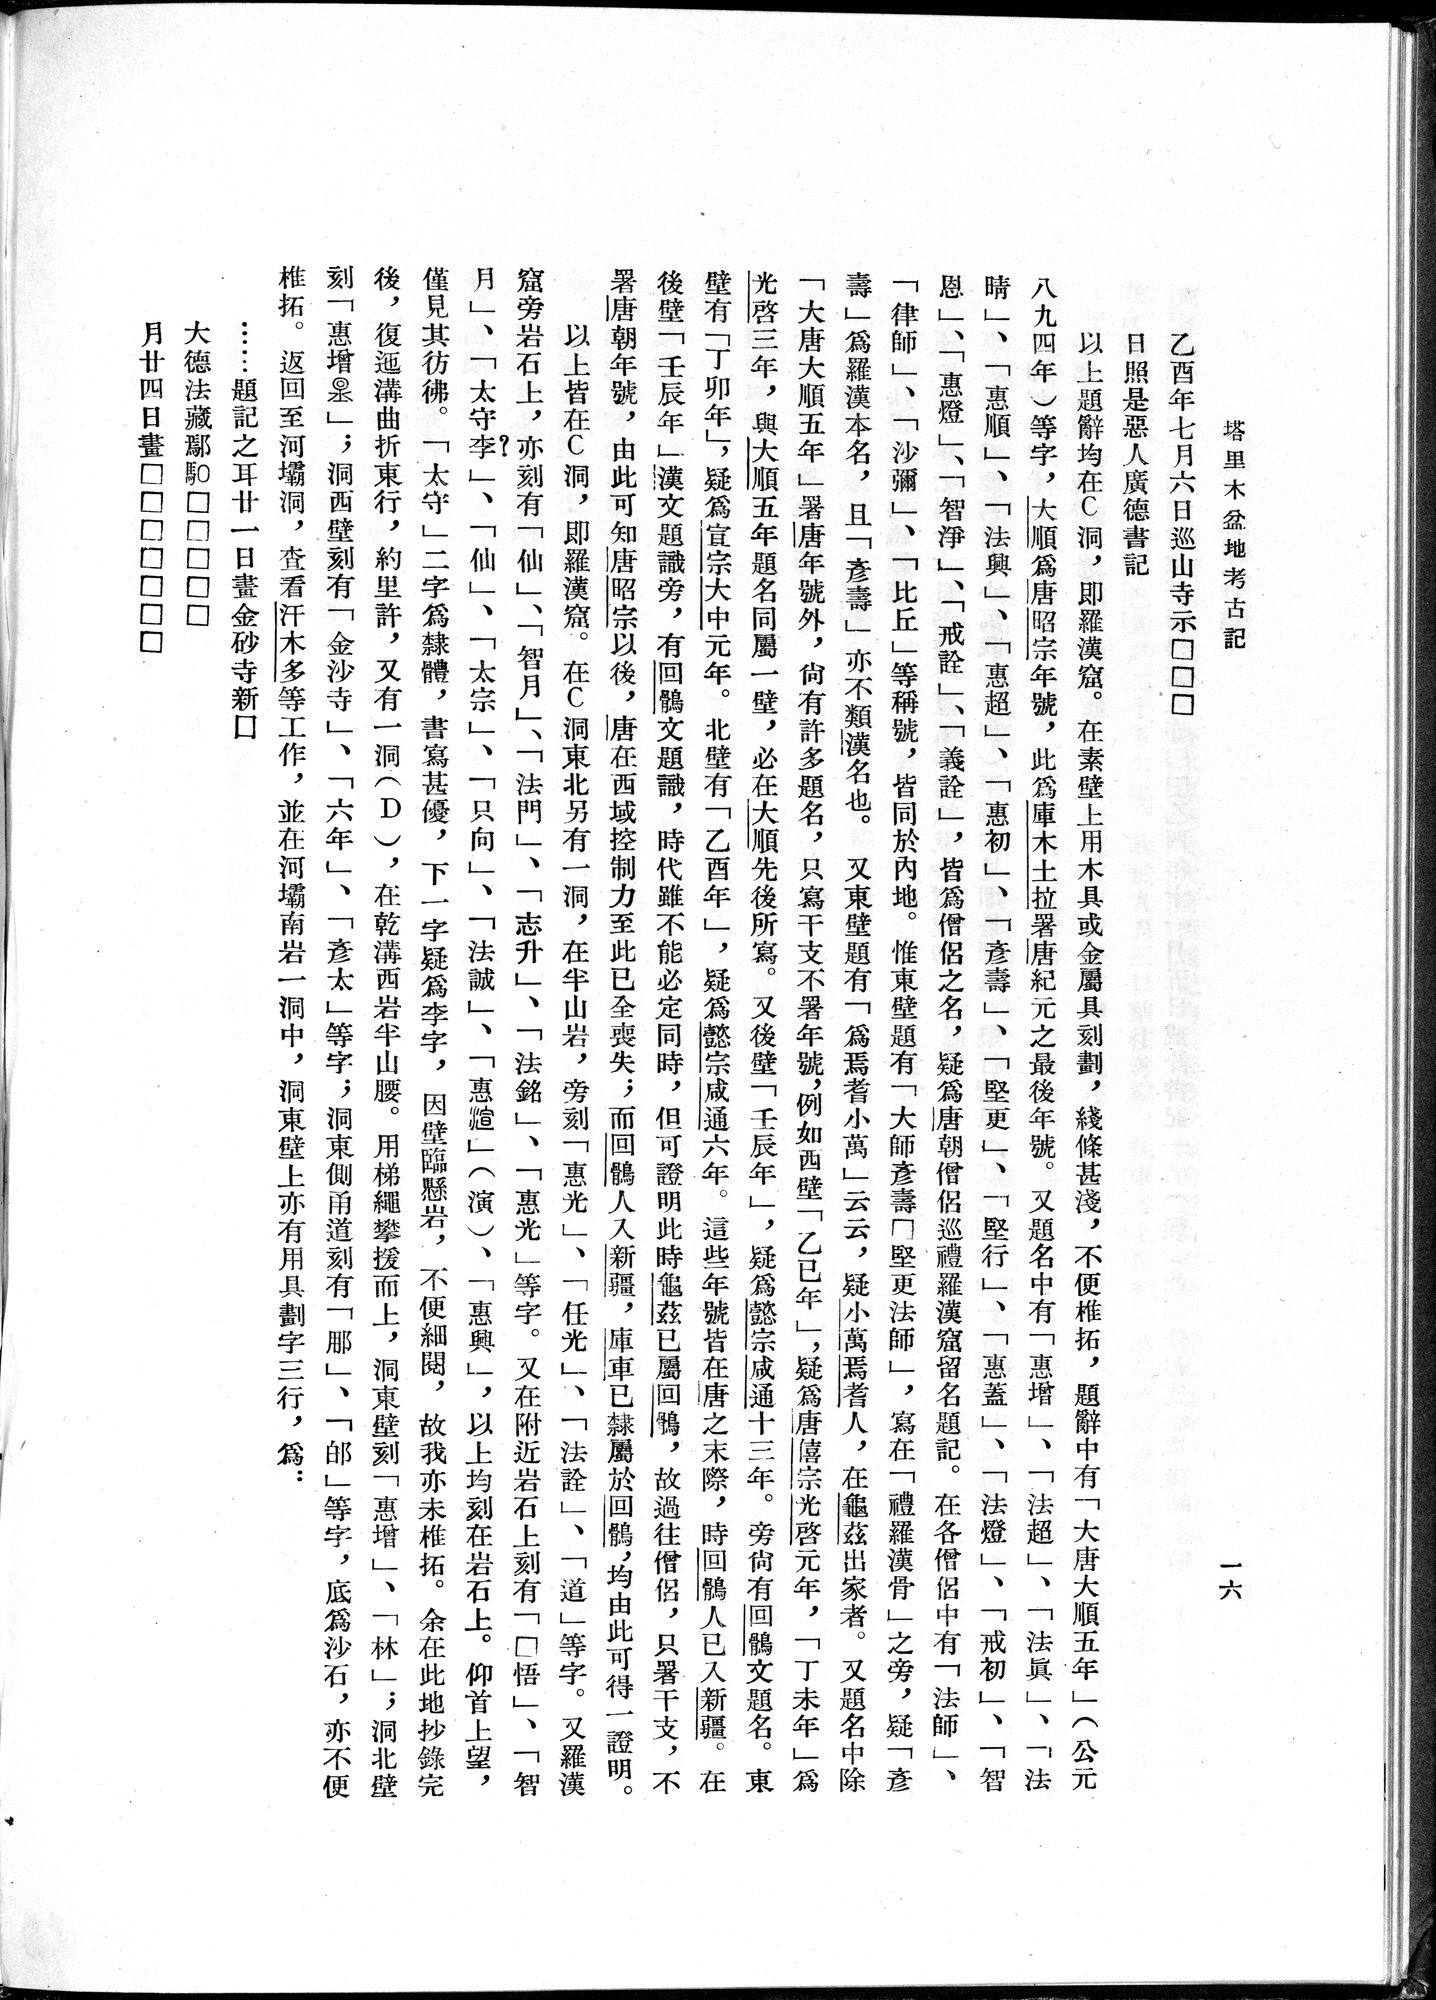 塔里木盆地考古記 : vol.1 / Page 40 (Grayscale High Resolution Image)